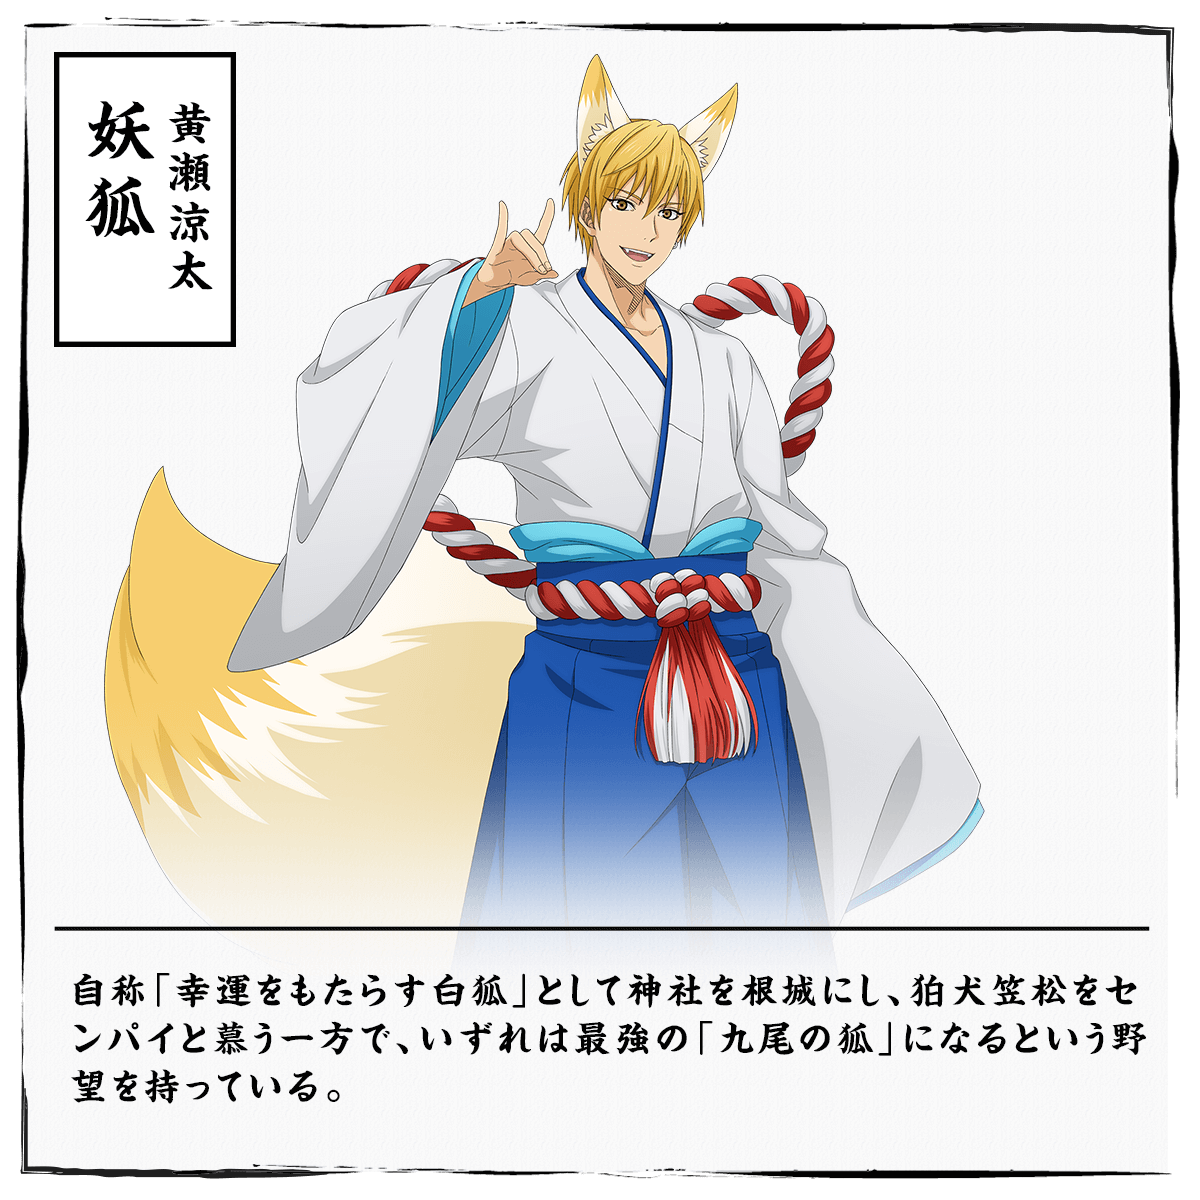 
                  黄瀬涼太 妖狐
                  自称「幸運をもたらす白狐」として神社を根城にし、狛犬笠松をセンパイと慕う一方で、いずれは最強の「九尾の狐」になるという野望を持っている。
                  